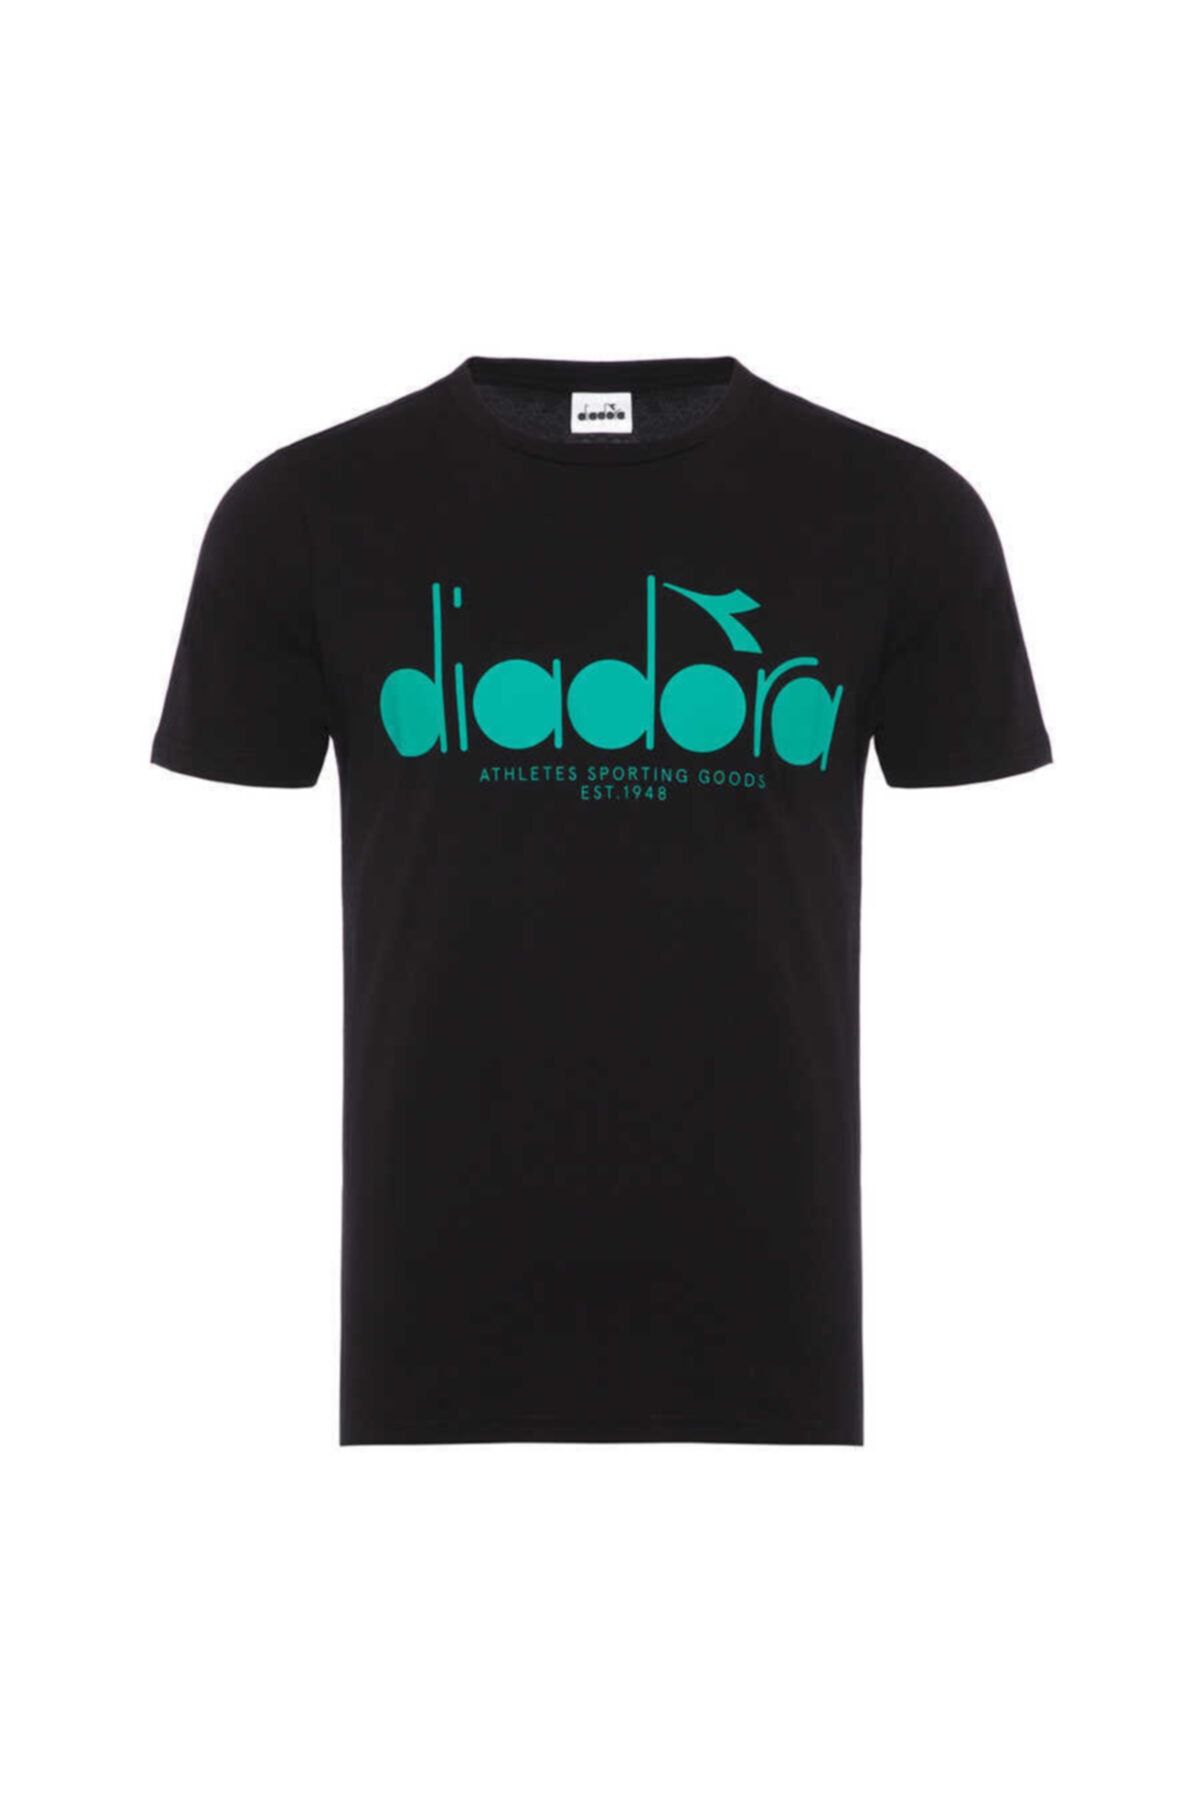 Diadora Dıadora Iconic Siyah Erkek Tişört